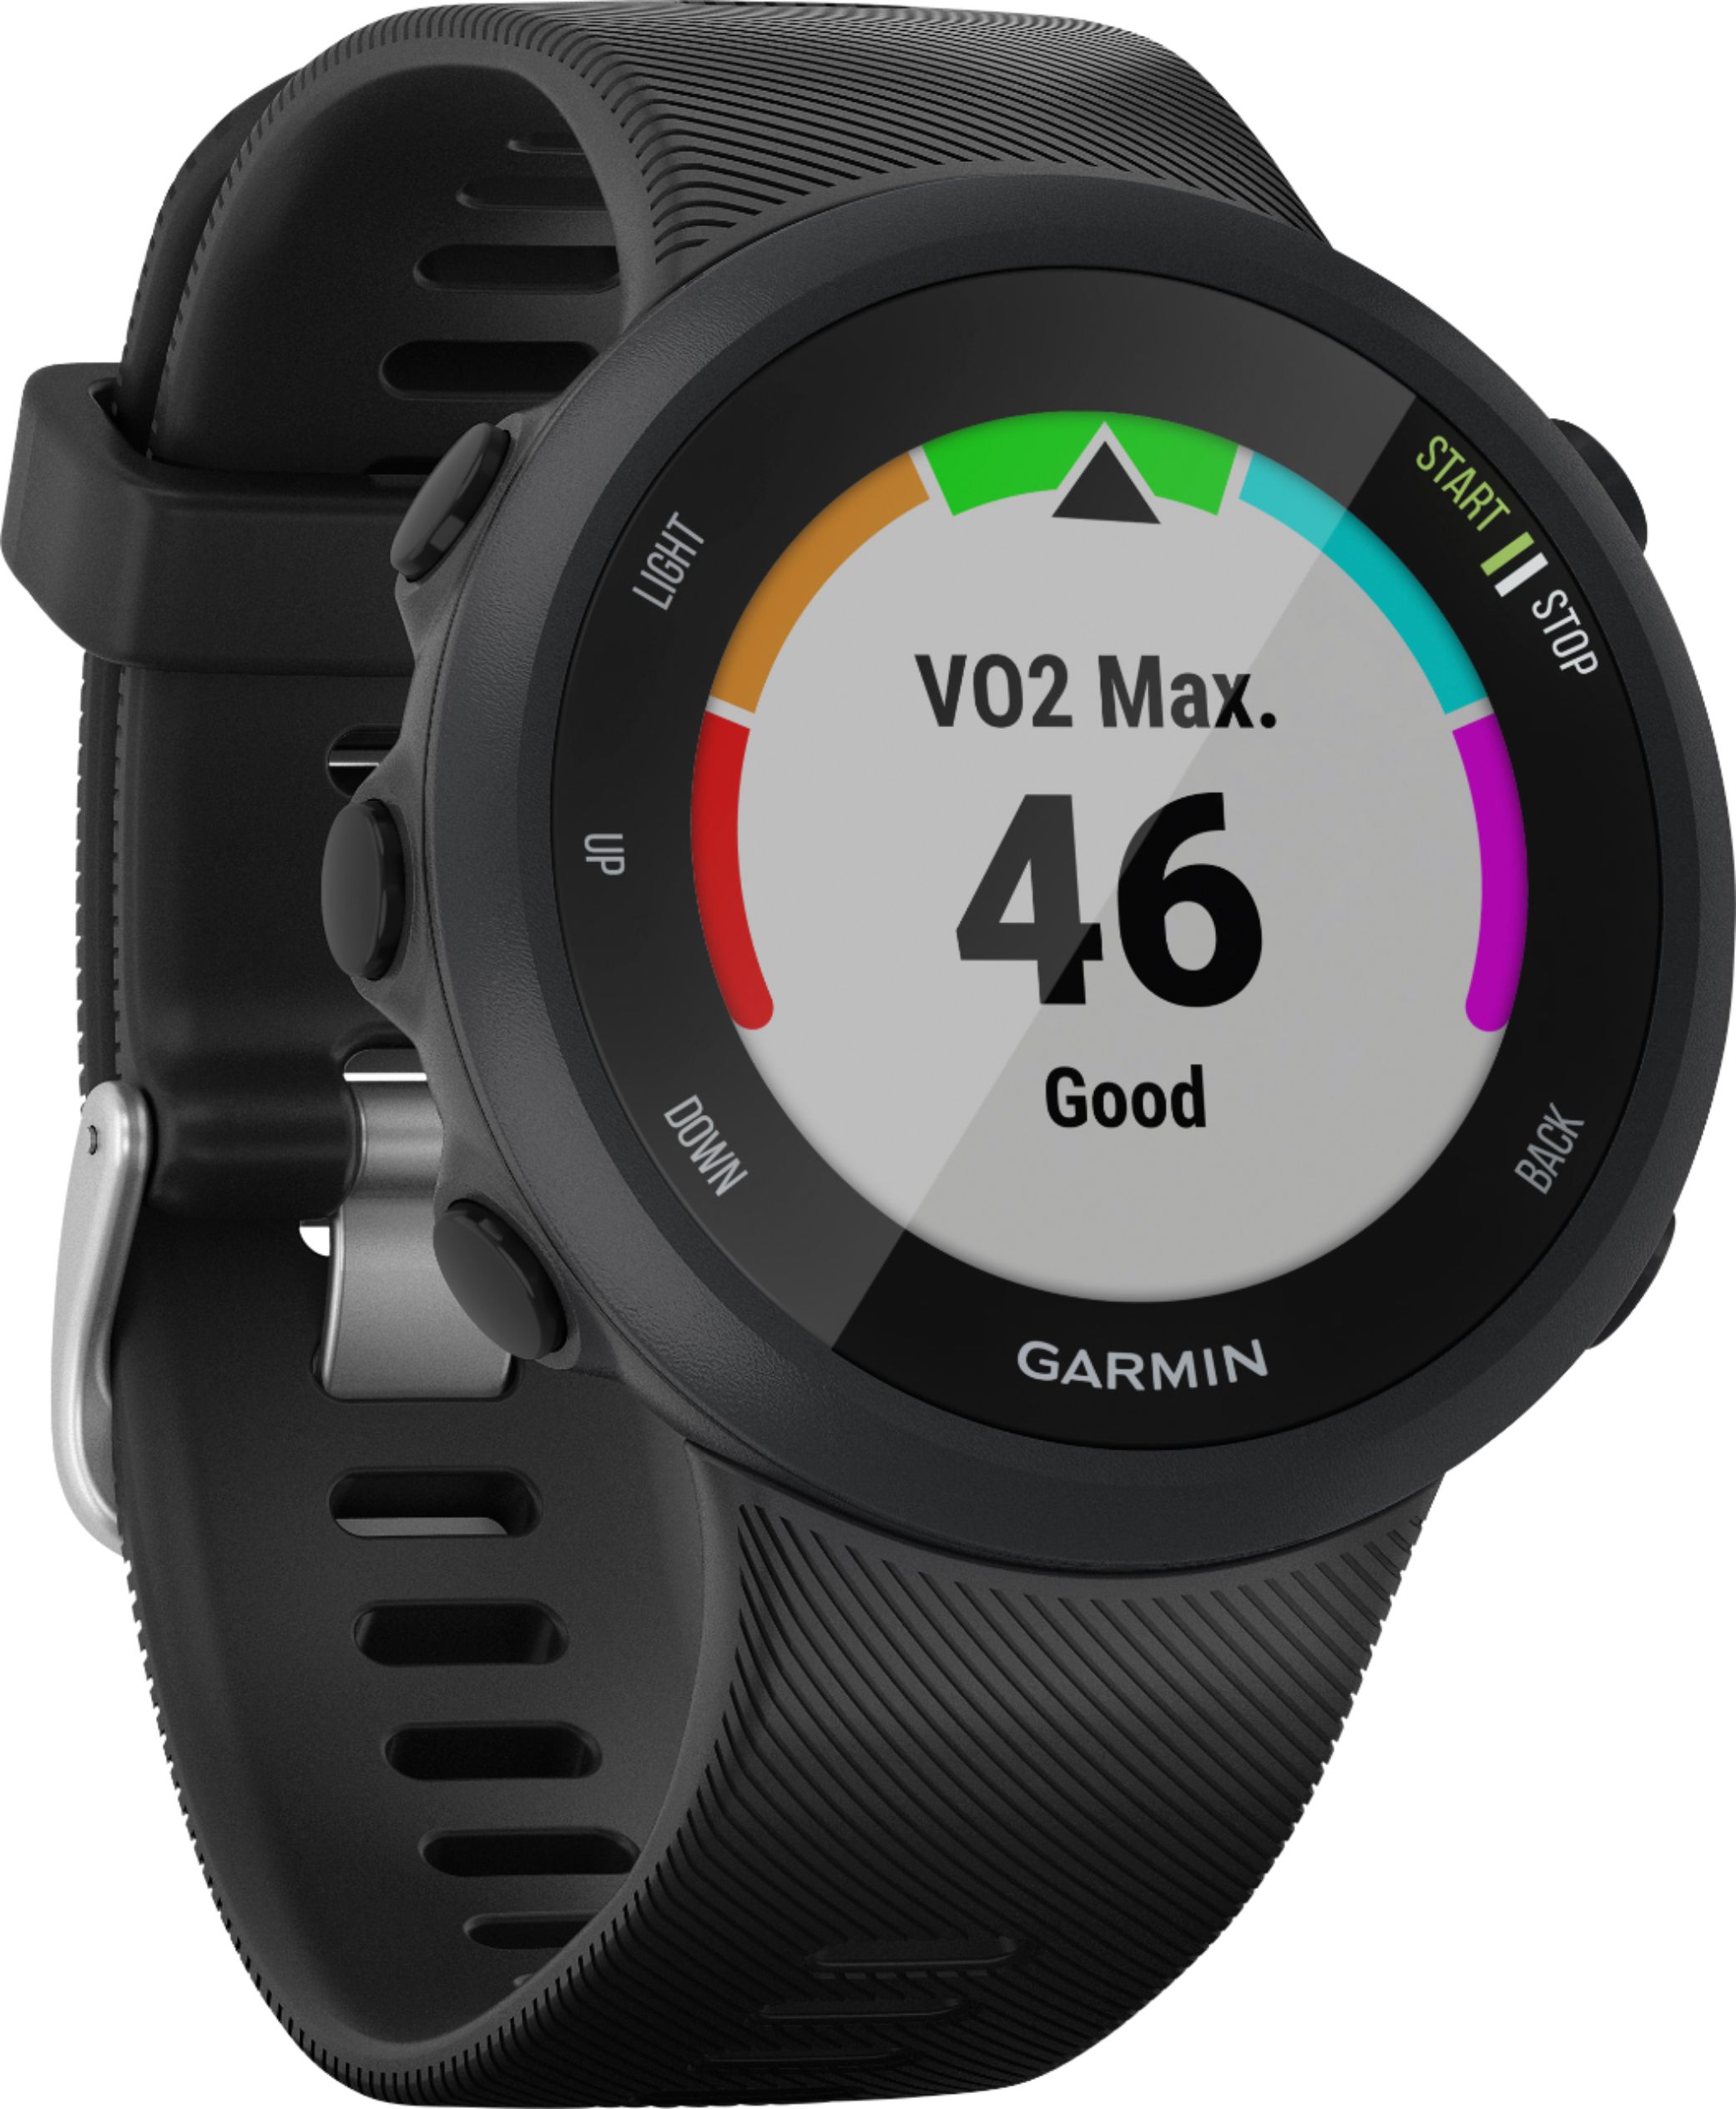 Angle View: Garmin - Forerunner 45 GPS Smartwatch 42mm Fiber-Reinforced Polymer - Black